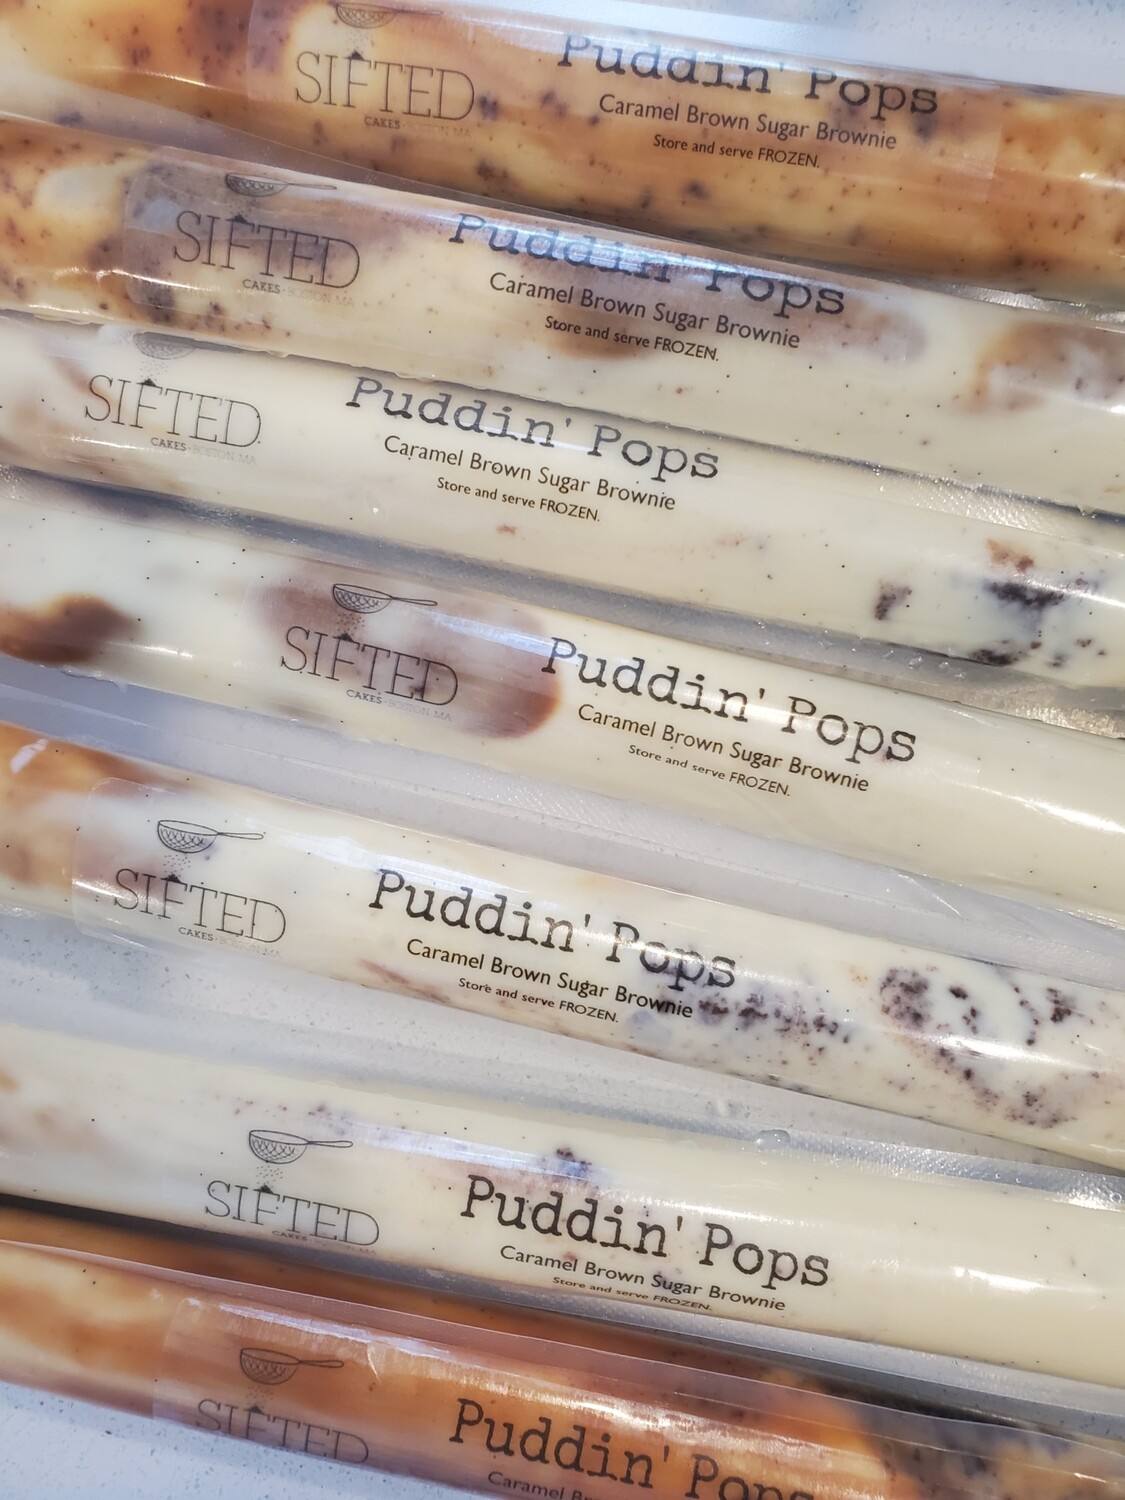 Puddin' Pops!